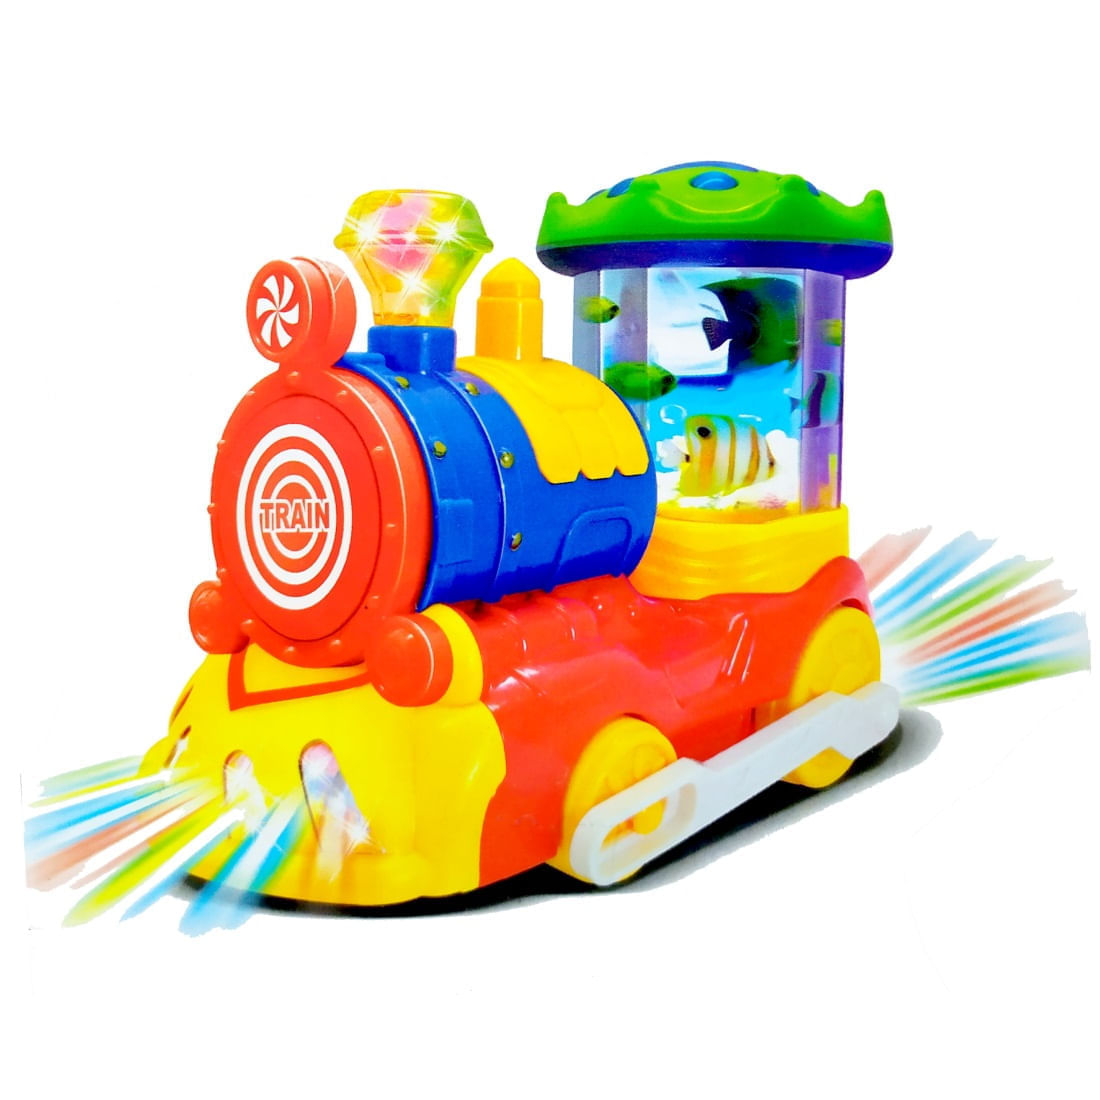 Trem de Brinquedo funciona a Pilha, anda nos trilhos - Artigos infantis -  Jaçanã, São Paulo 1254471398